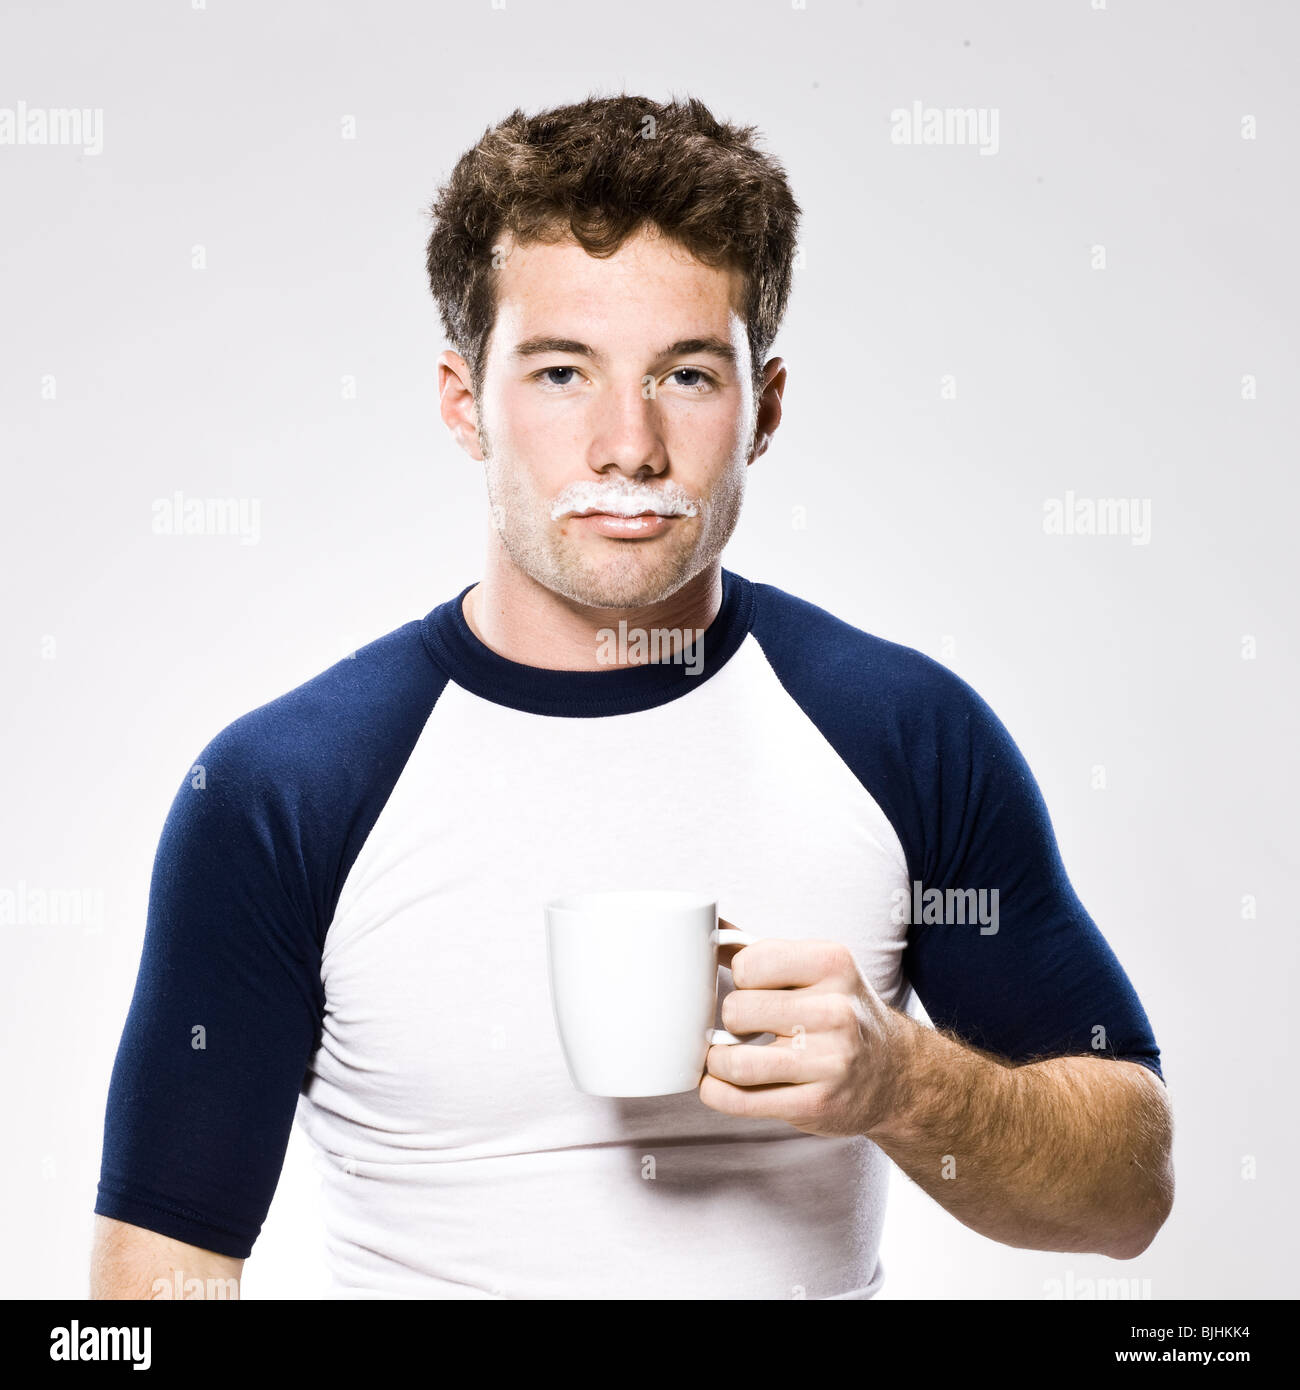 Homme avec une moustache de lait holding a white mug Banque D'Images